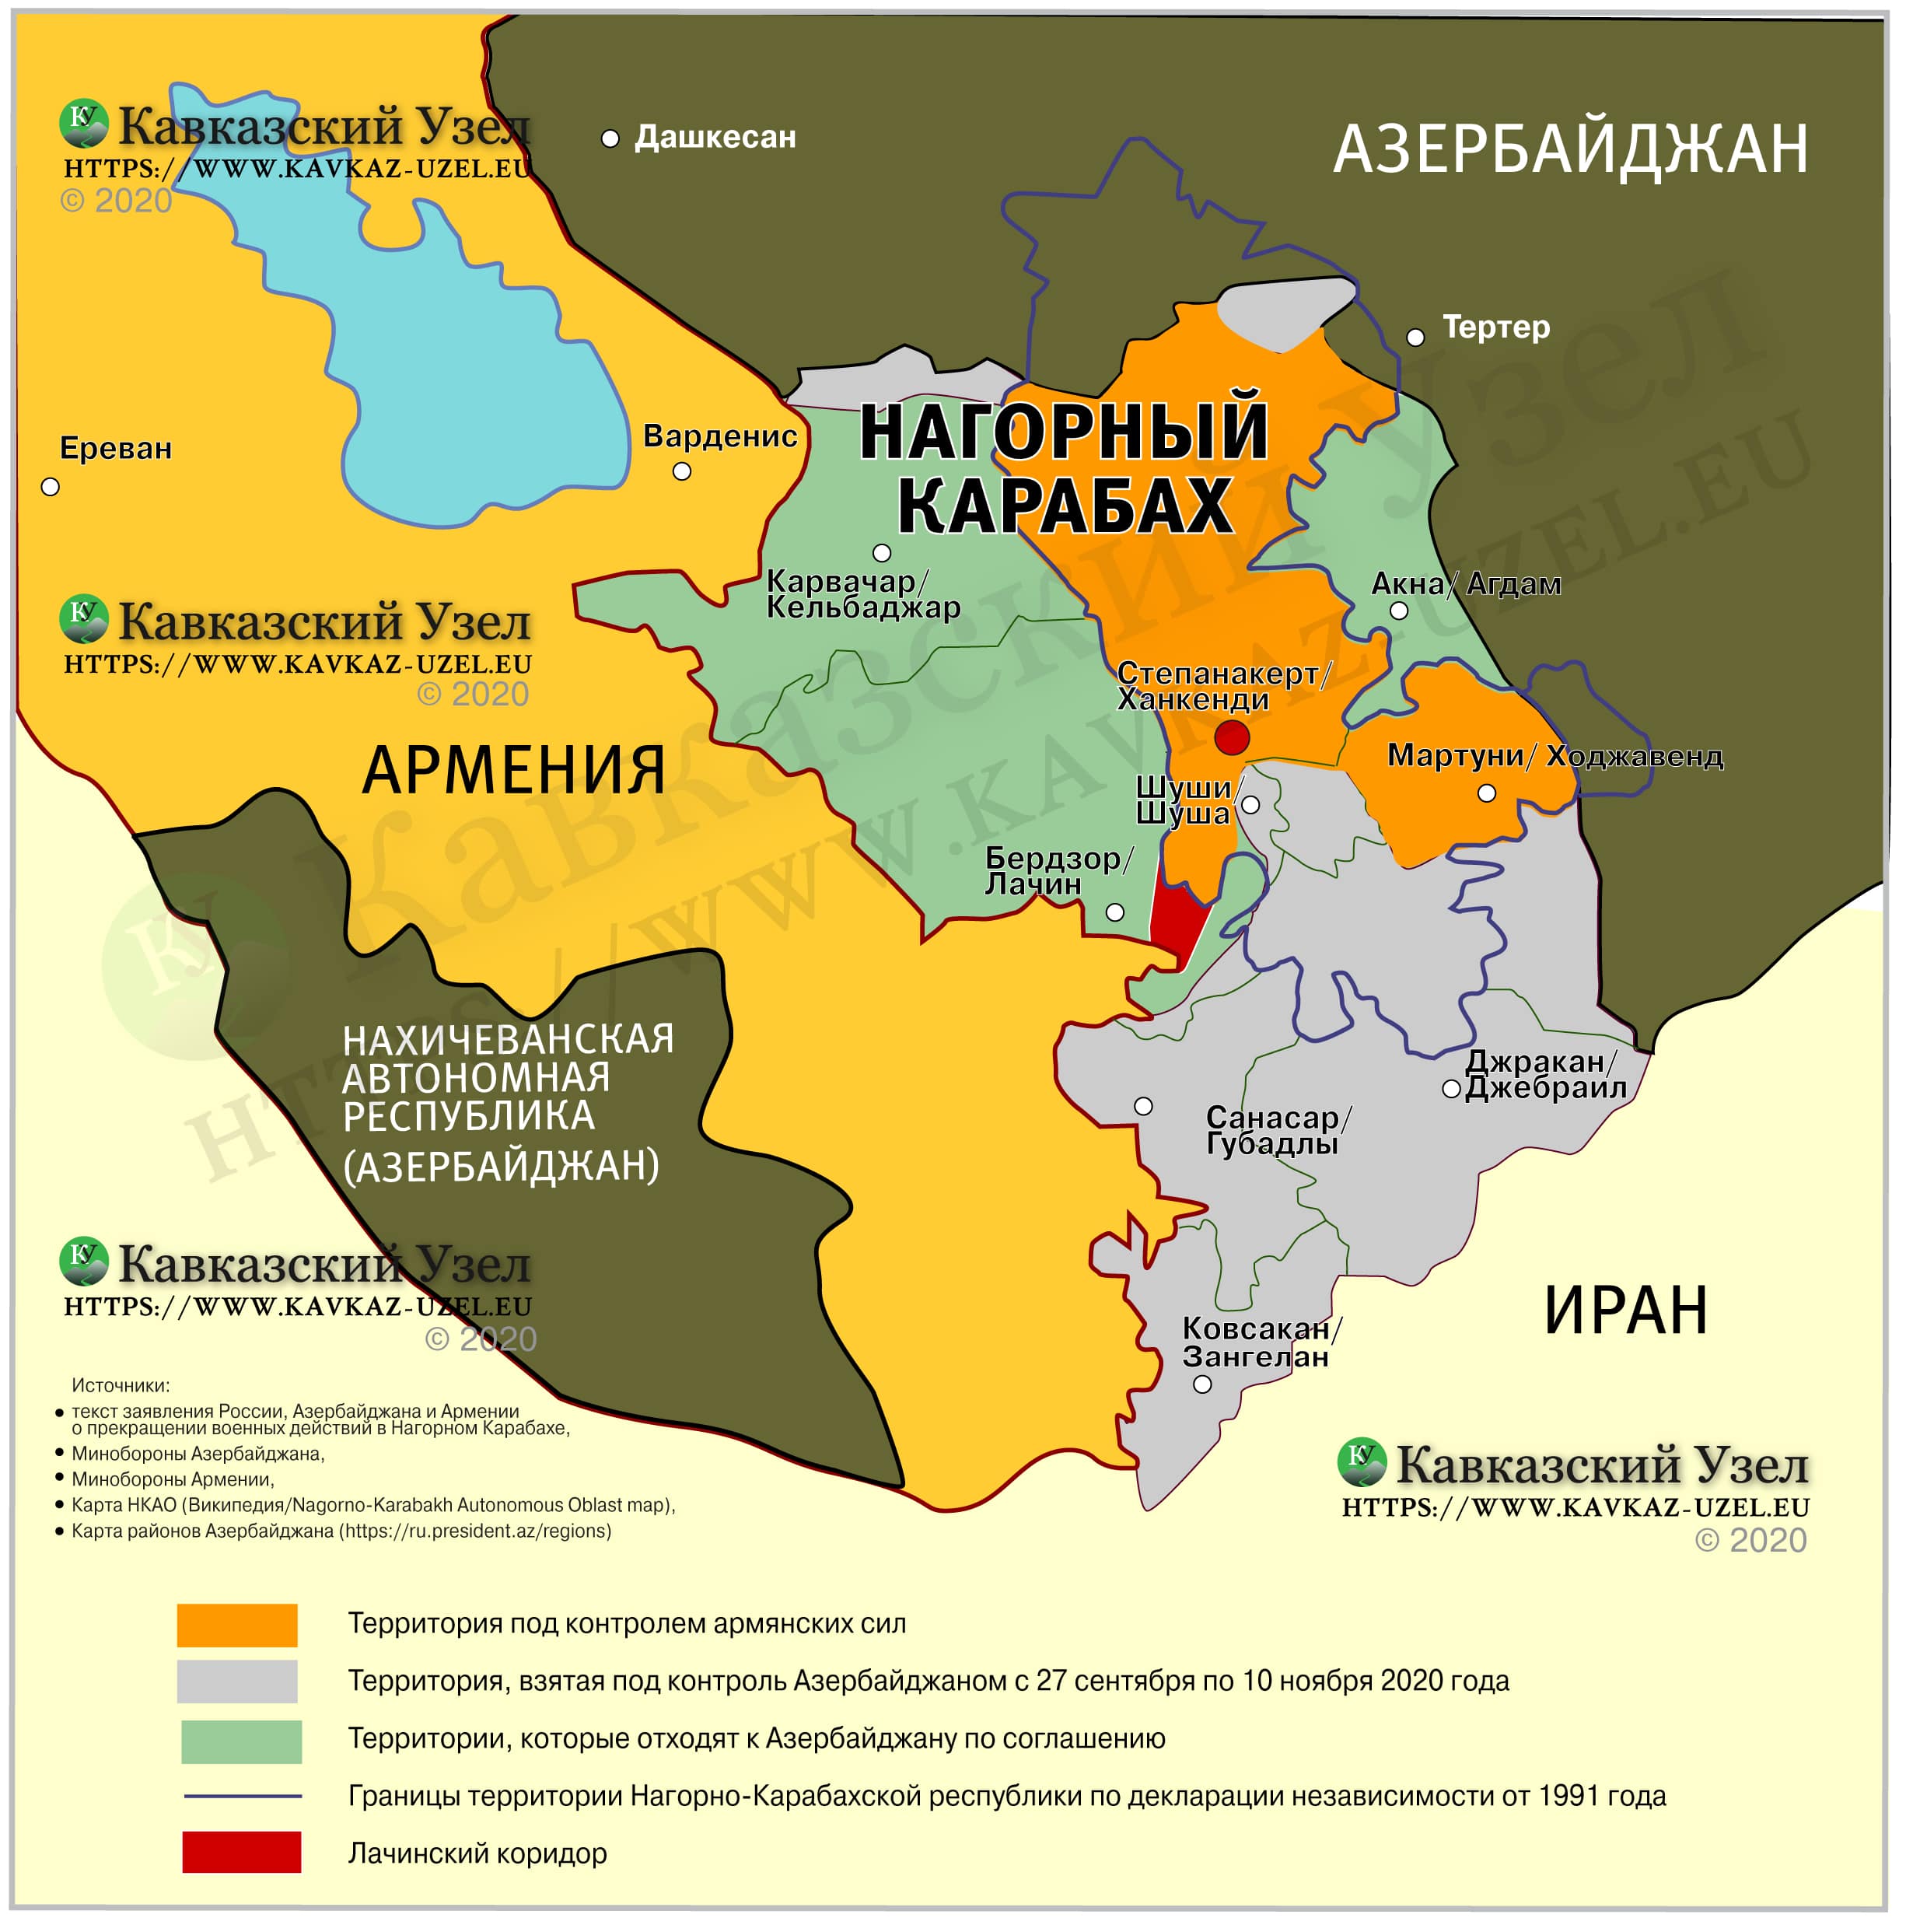 Карта итогов осенней войны 2020 года в Нагорном Карабахе, https://www.kavkaz-uzel.eu/articles/356336/